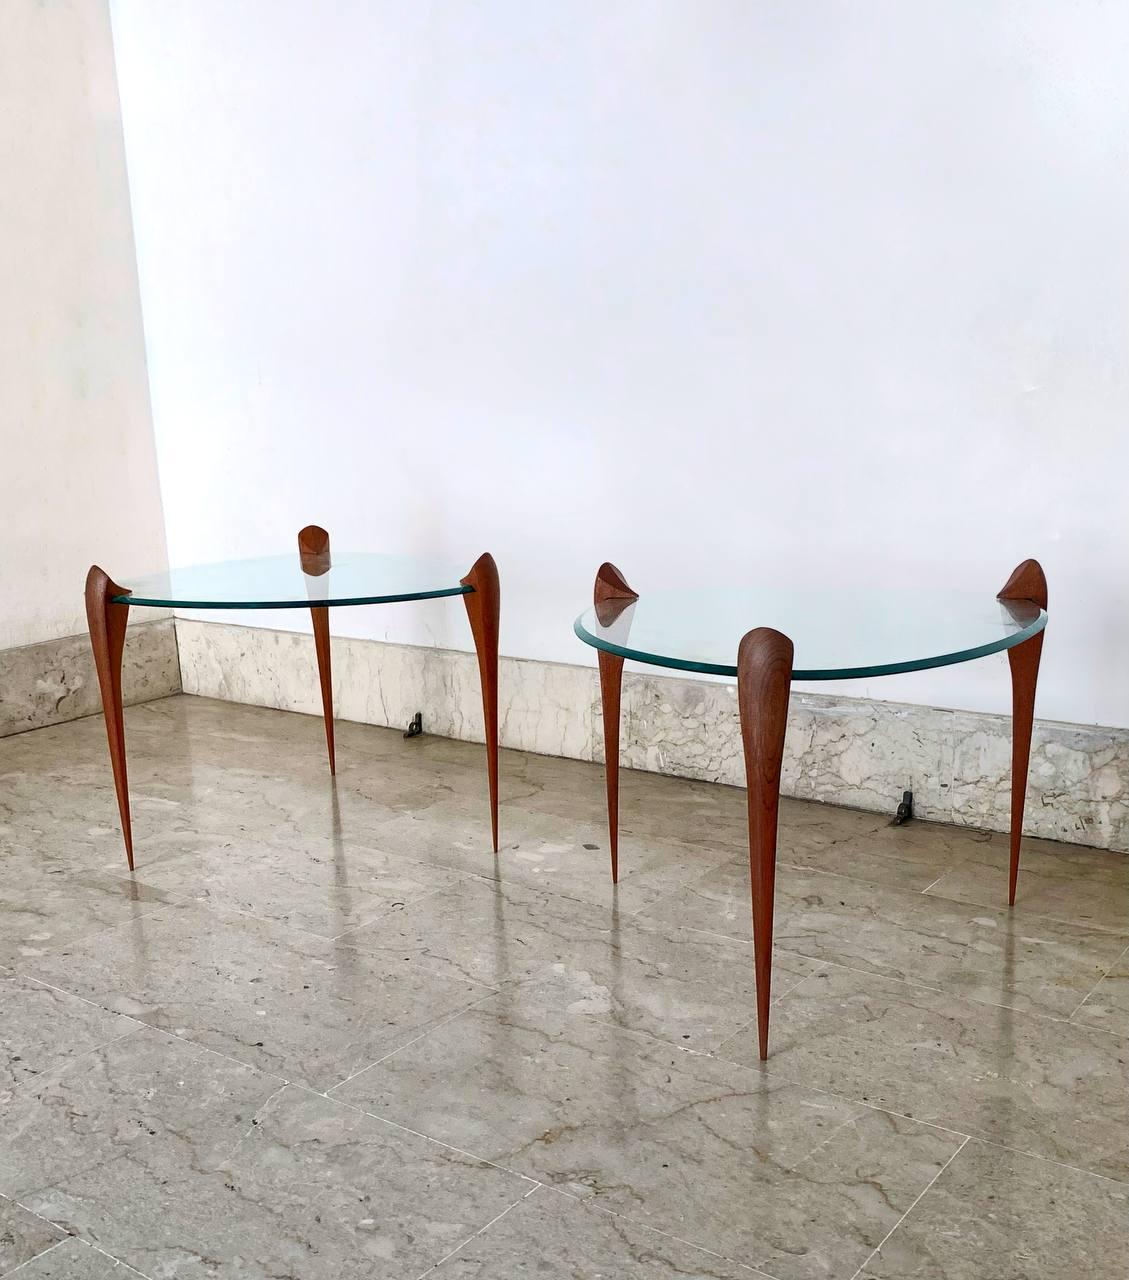 In the style of Max Ingrand coppia tavolini bassi  Fontana Arte, Italia, anni '1950-1960.
Con base in legno e piano in cristallo sagomato ad incastro.
La bellezza e la storia parlano da se.
In particolare possiamo notare la  documentazione